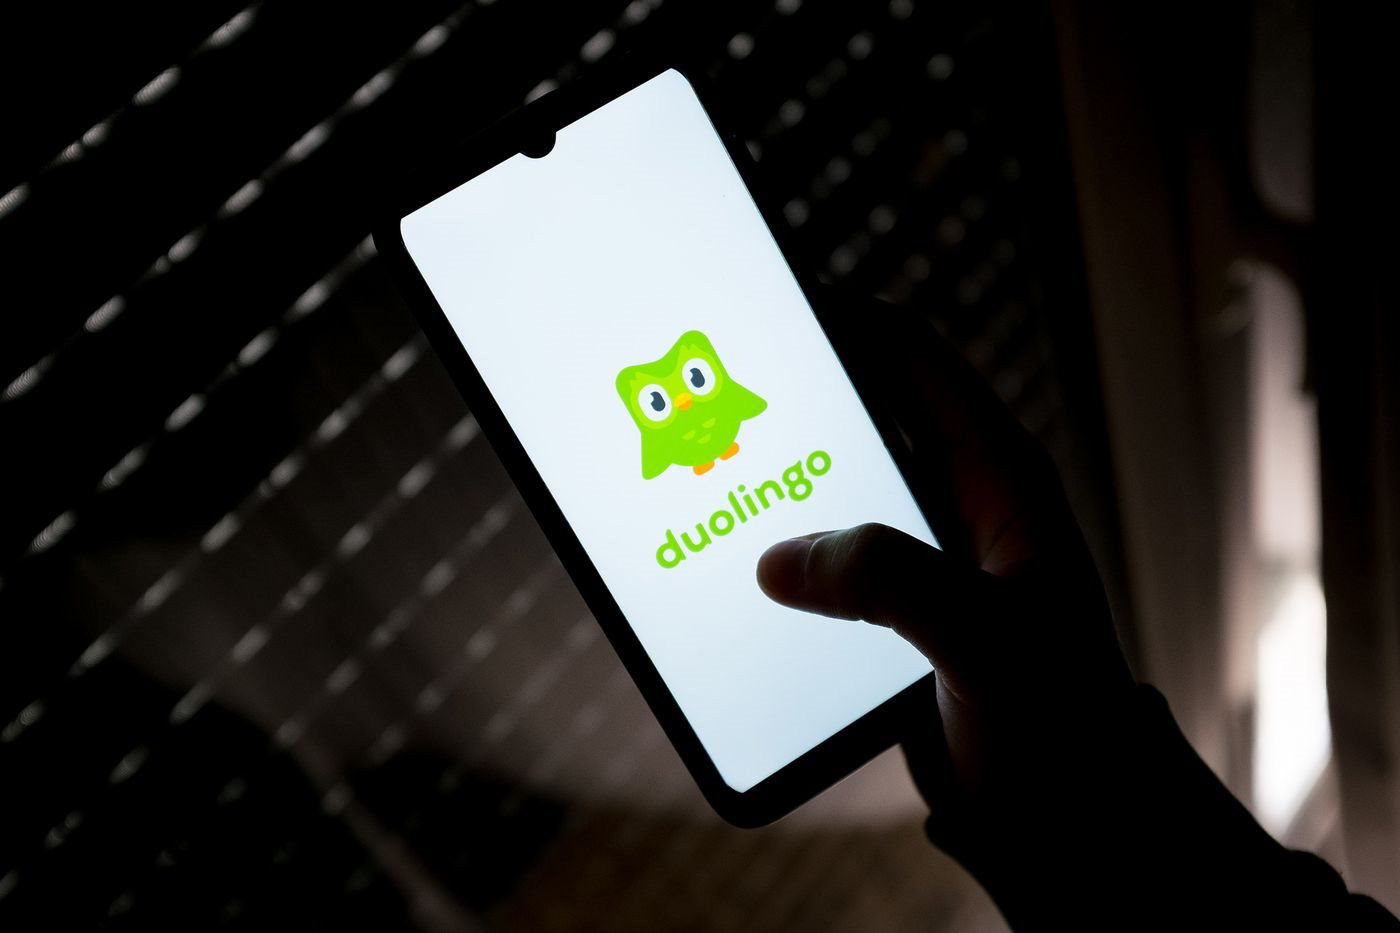 Duolingo: Từ yên startup thua lột, CEO không động động thu đột tủ độ thay dấi 'cuộc chơi' hộc động động ngủng.